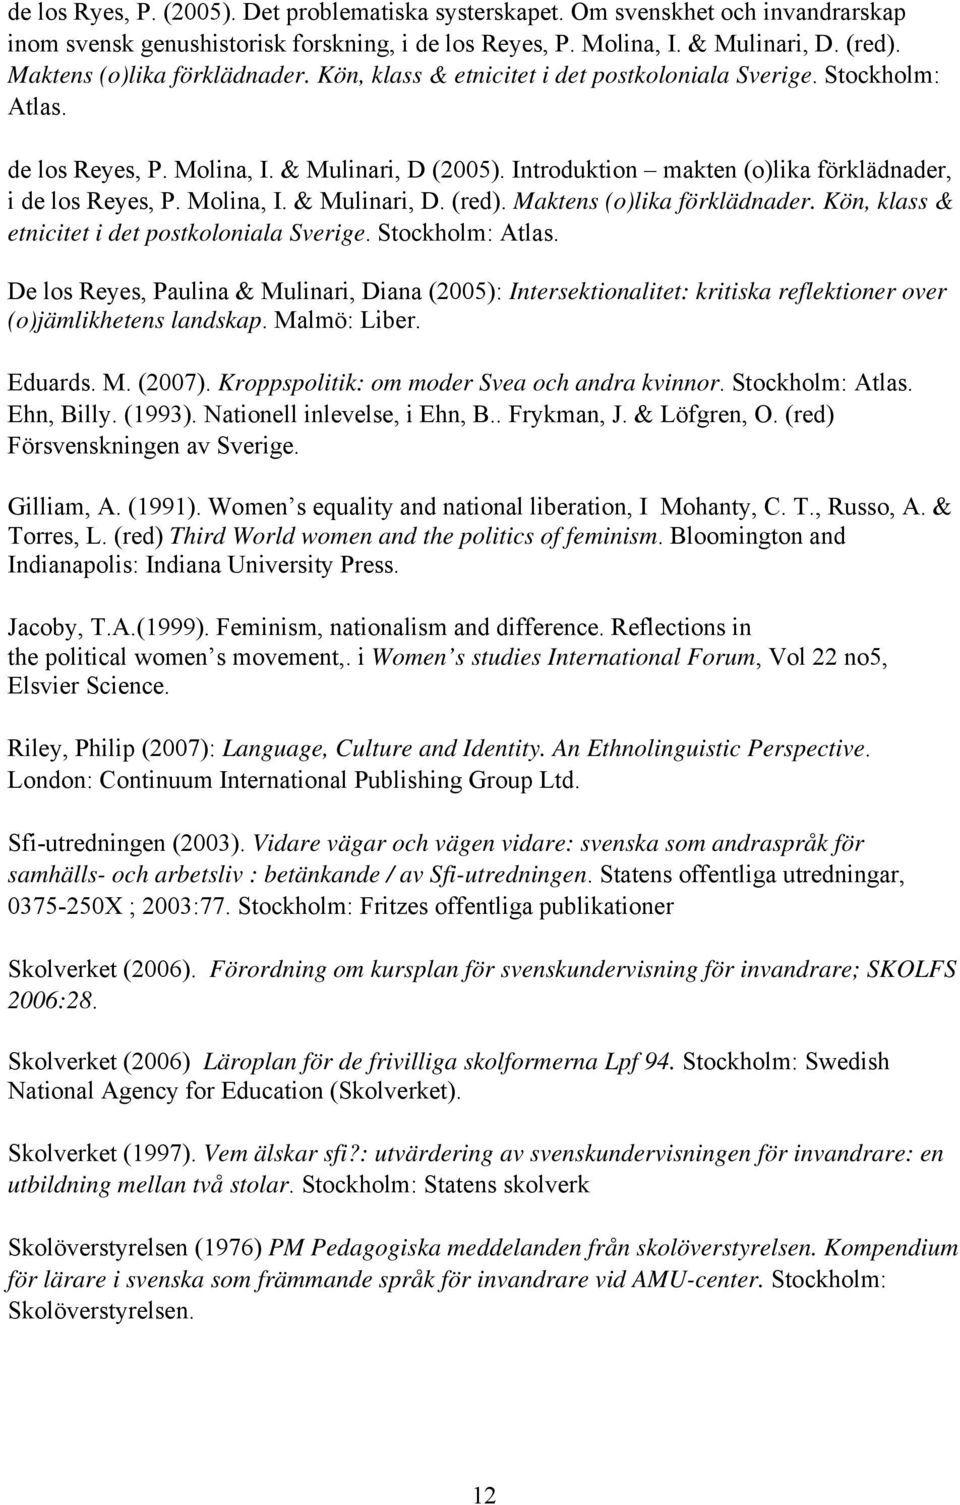 Introduktion makten (o)lika förklädnader, i de los Reyes, P. Molina, I. & Mulinari, D. (red). Maktens (o)lika förklädnader. Kön, klass & etnicitet i det postkoloniala Sverige. Stockholm: Atlas.